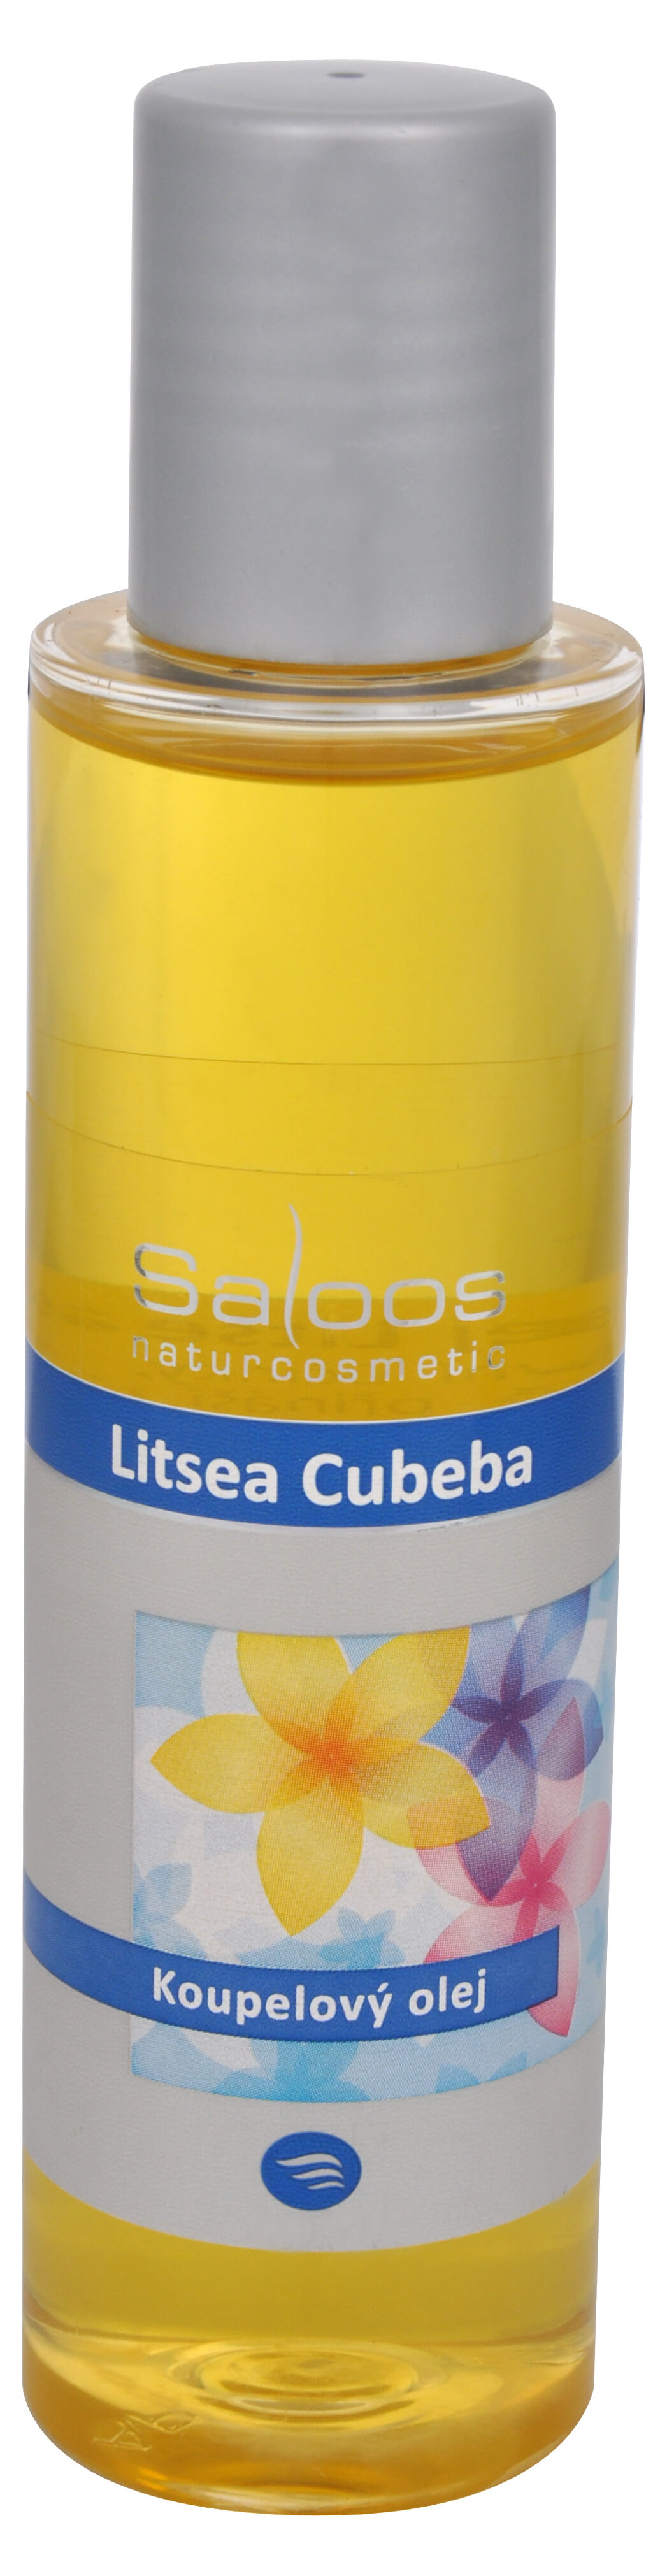 Zobrazit detail výrobku Saloos Koupelový olej - Litsea cubeba 125 ml